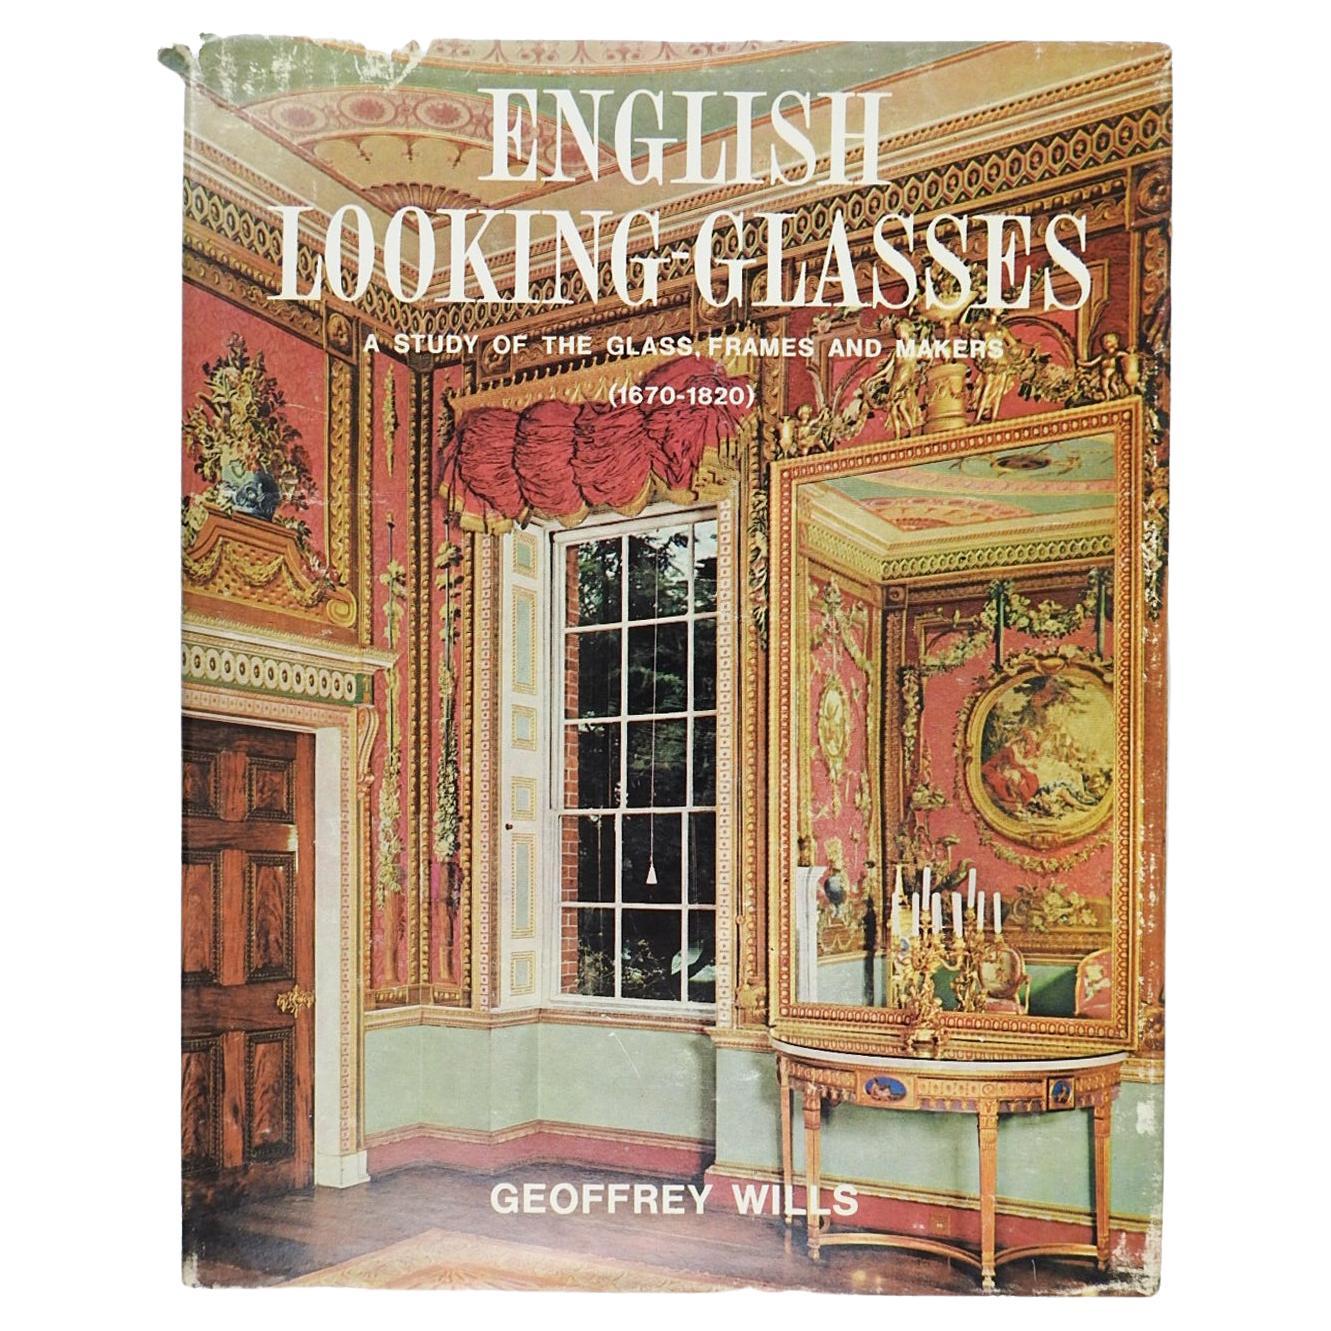 Lunettes anglaises une étude des montures de verre et des fabricants 1670-1820 Livre en vente